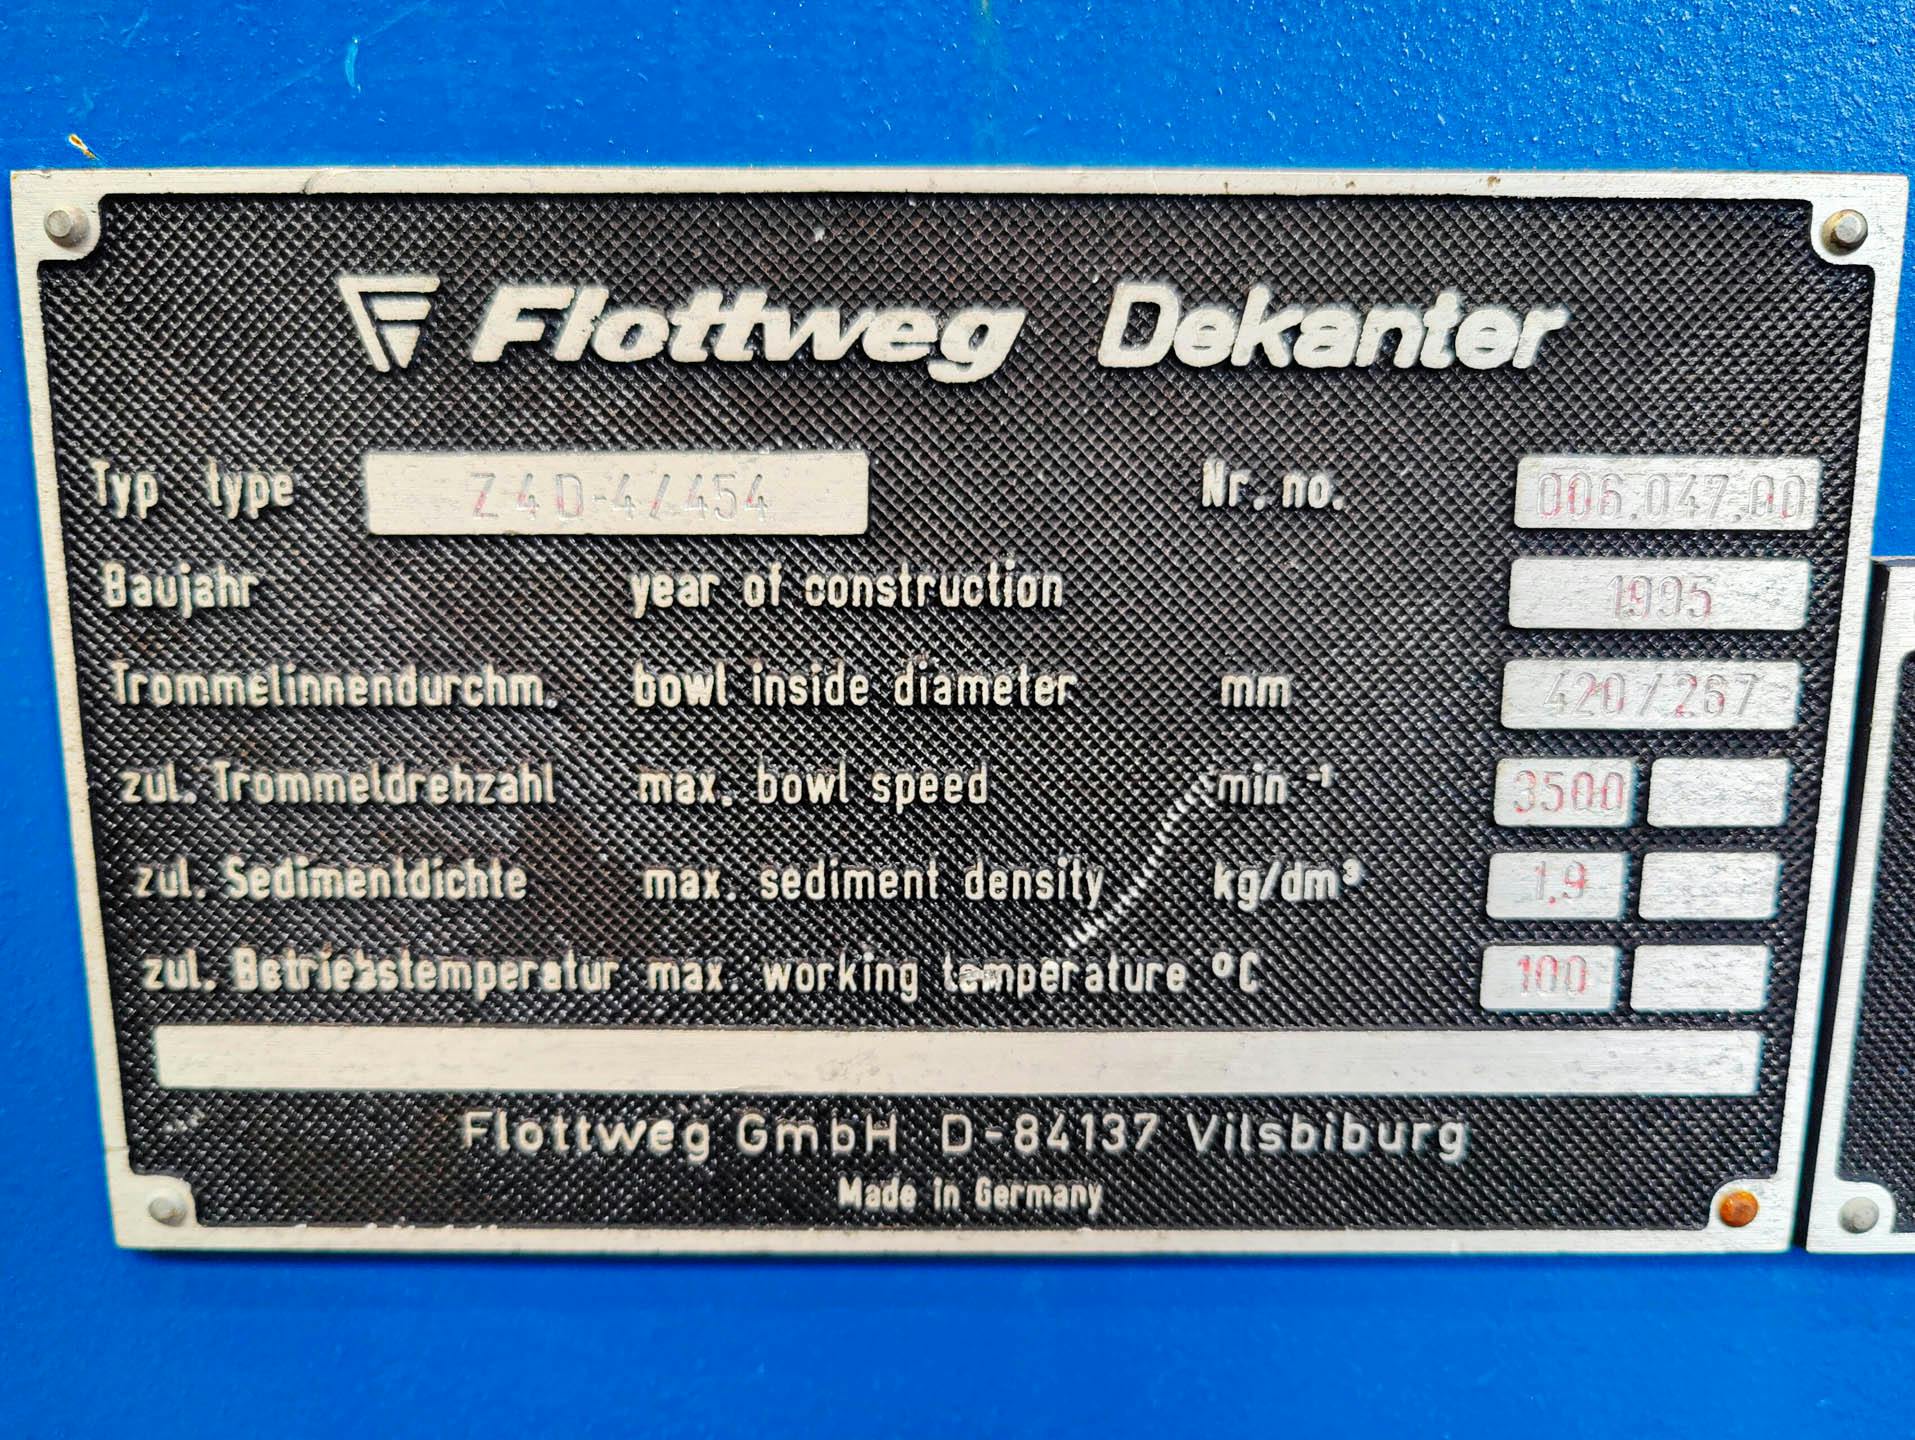 Flottweg Z4D/454 - Wirówka dekantacyjna - image 9